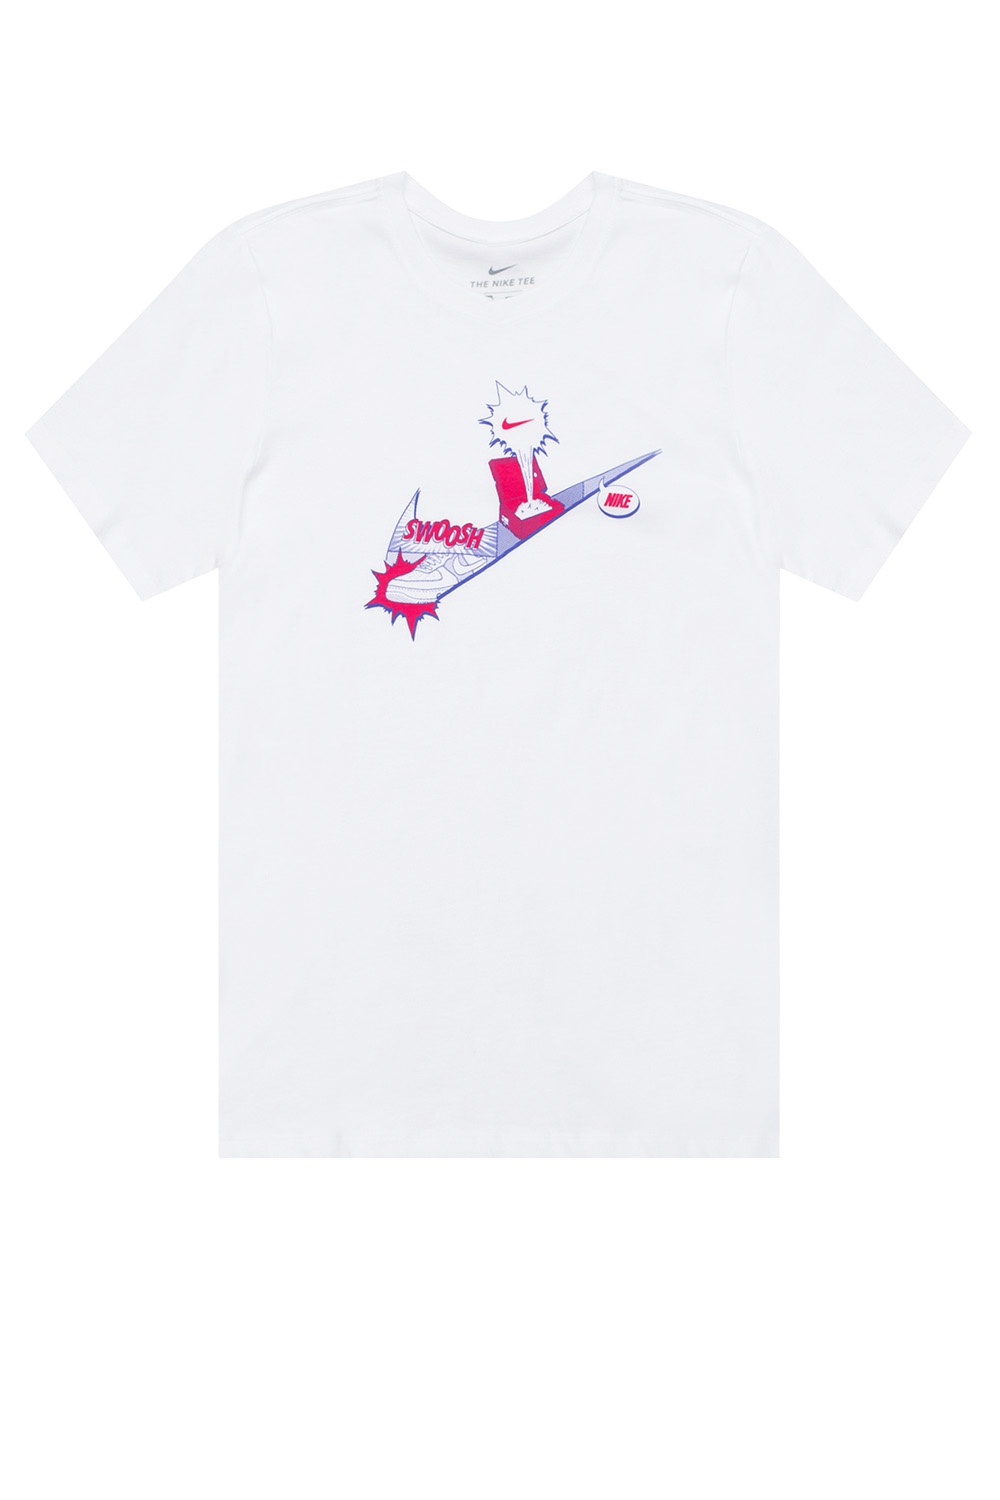 IetpShops Nepal - White Logo T - cool nike air max mesh 2017 lawsuits free  printable - shirt cool Nike